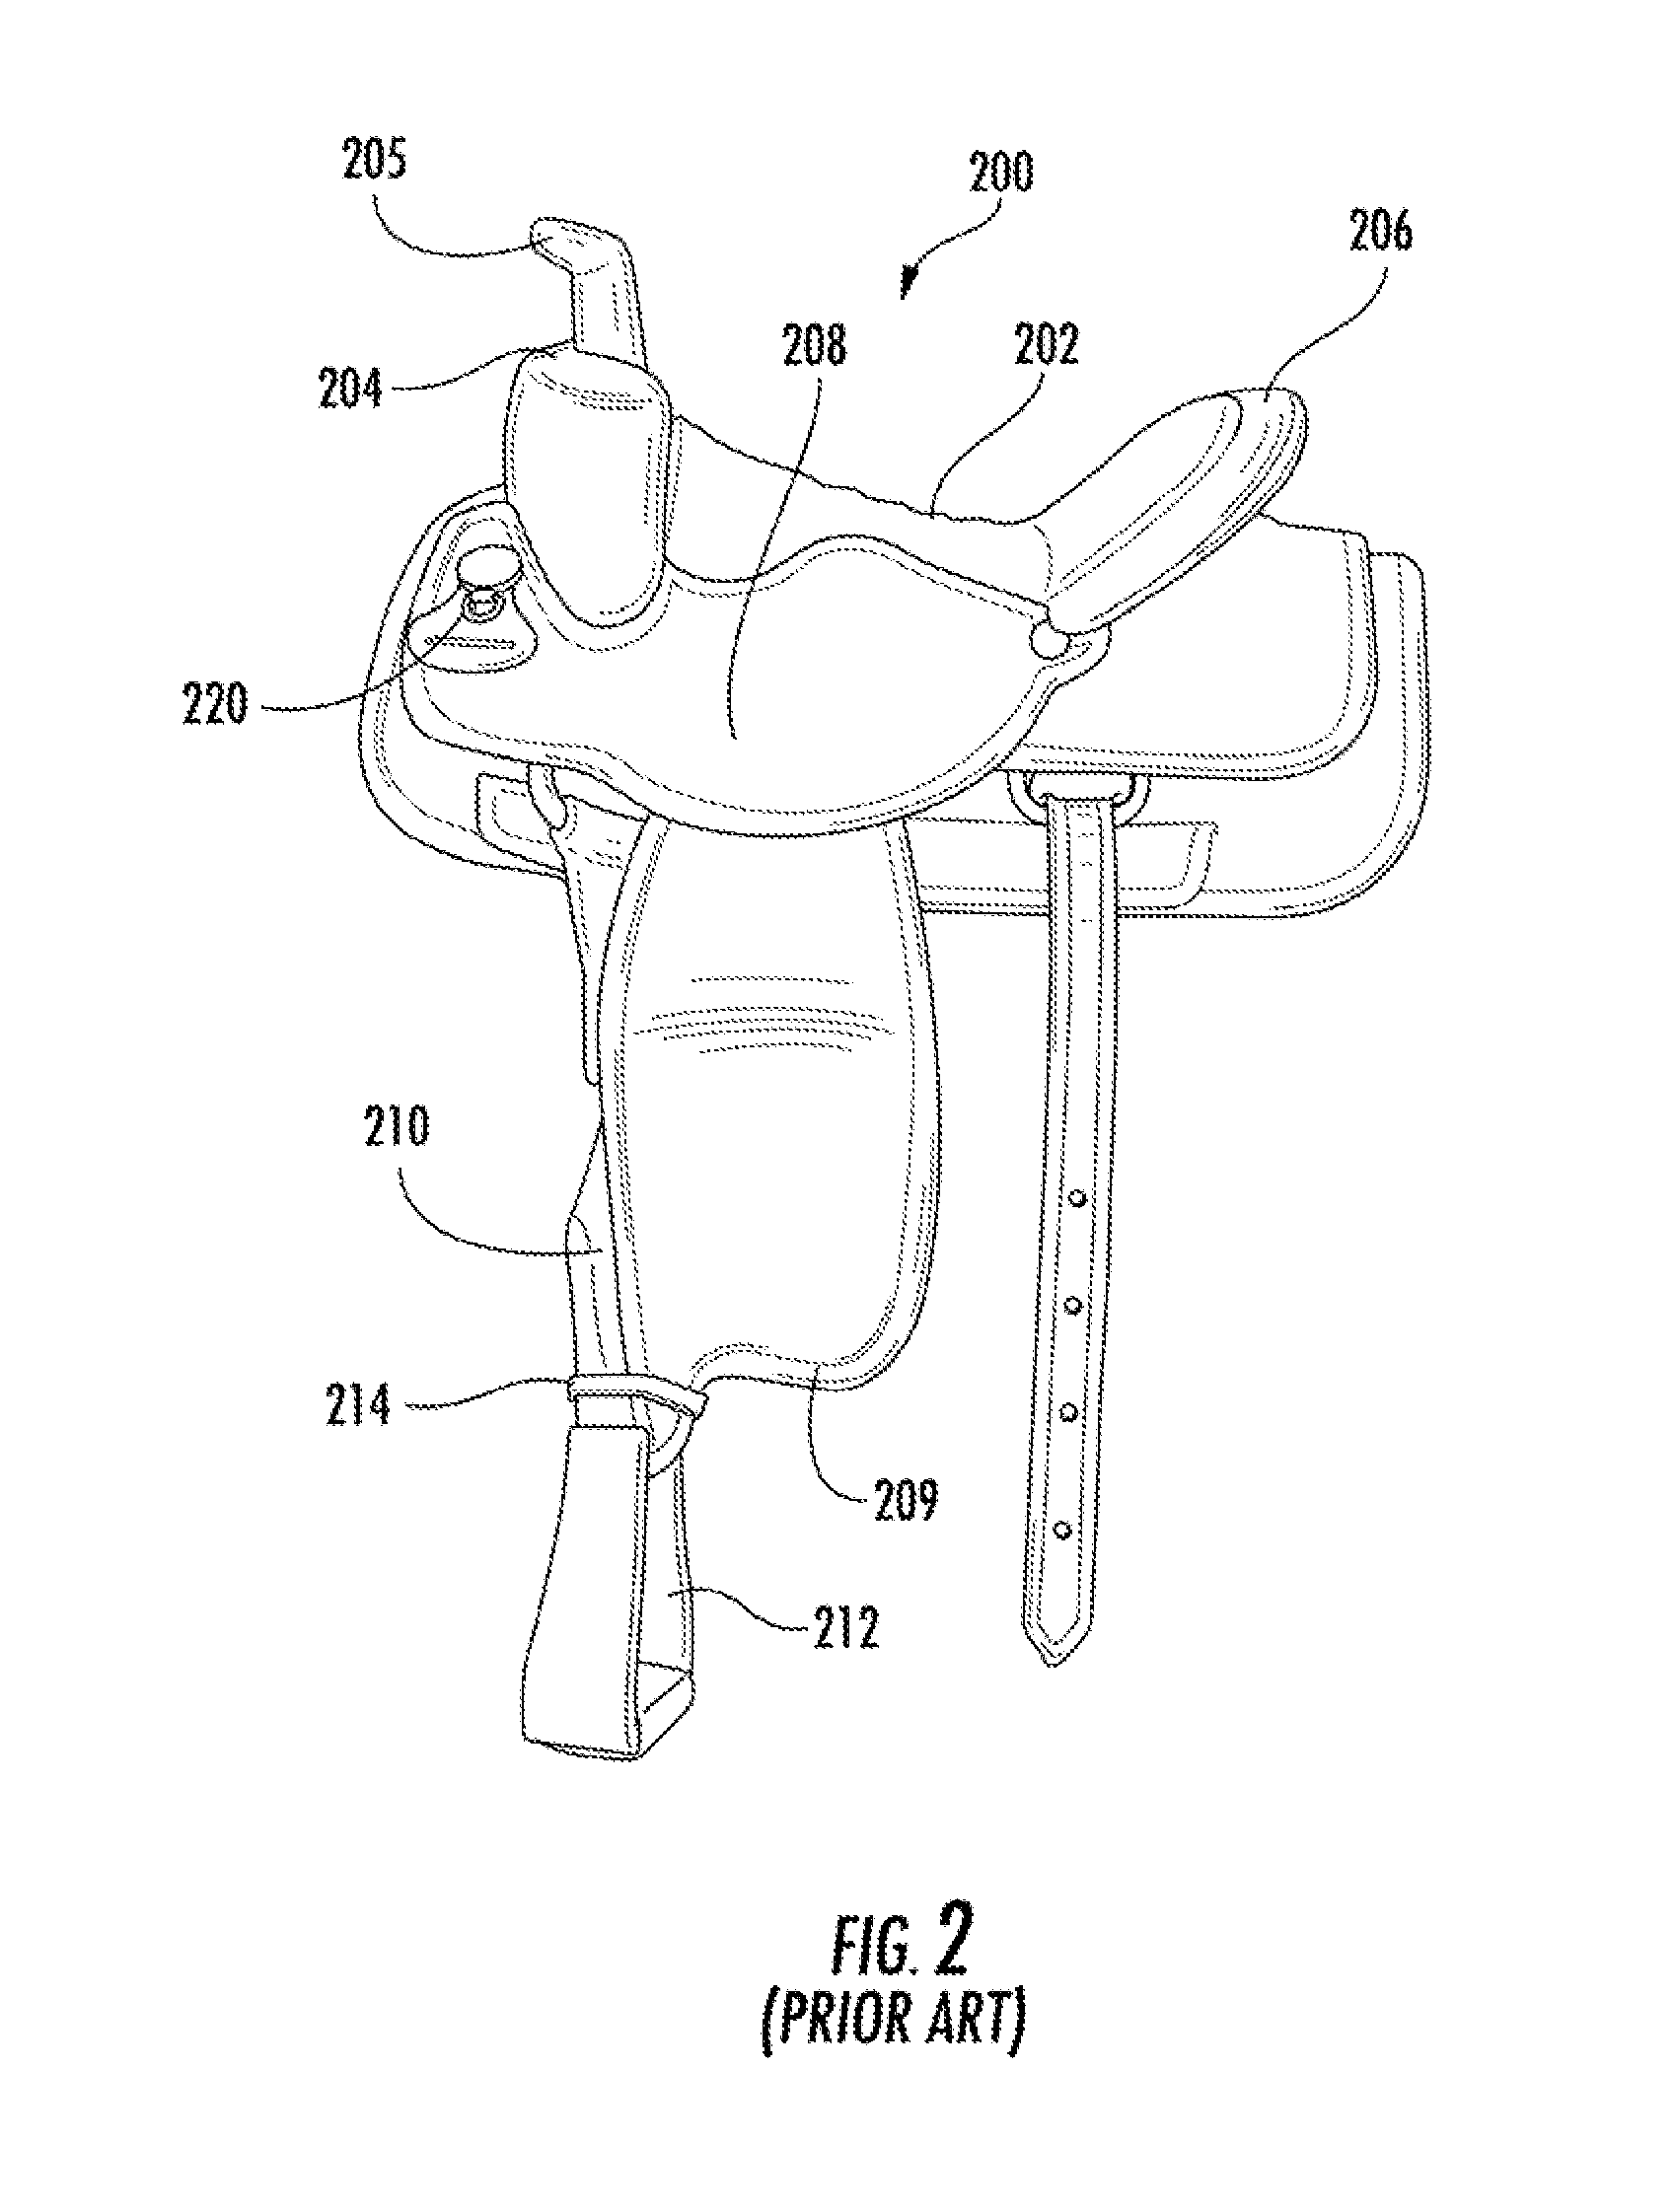 Saddle accessory apparatus